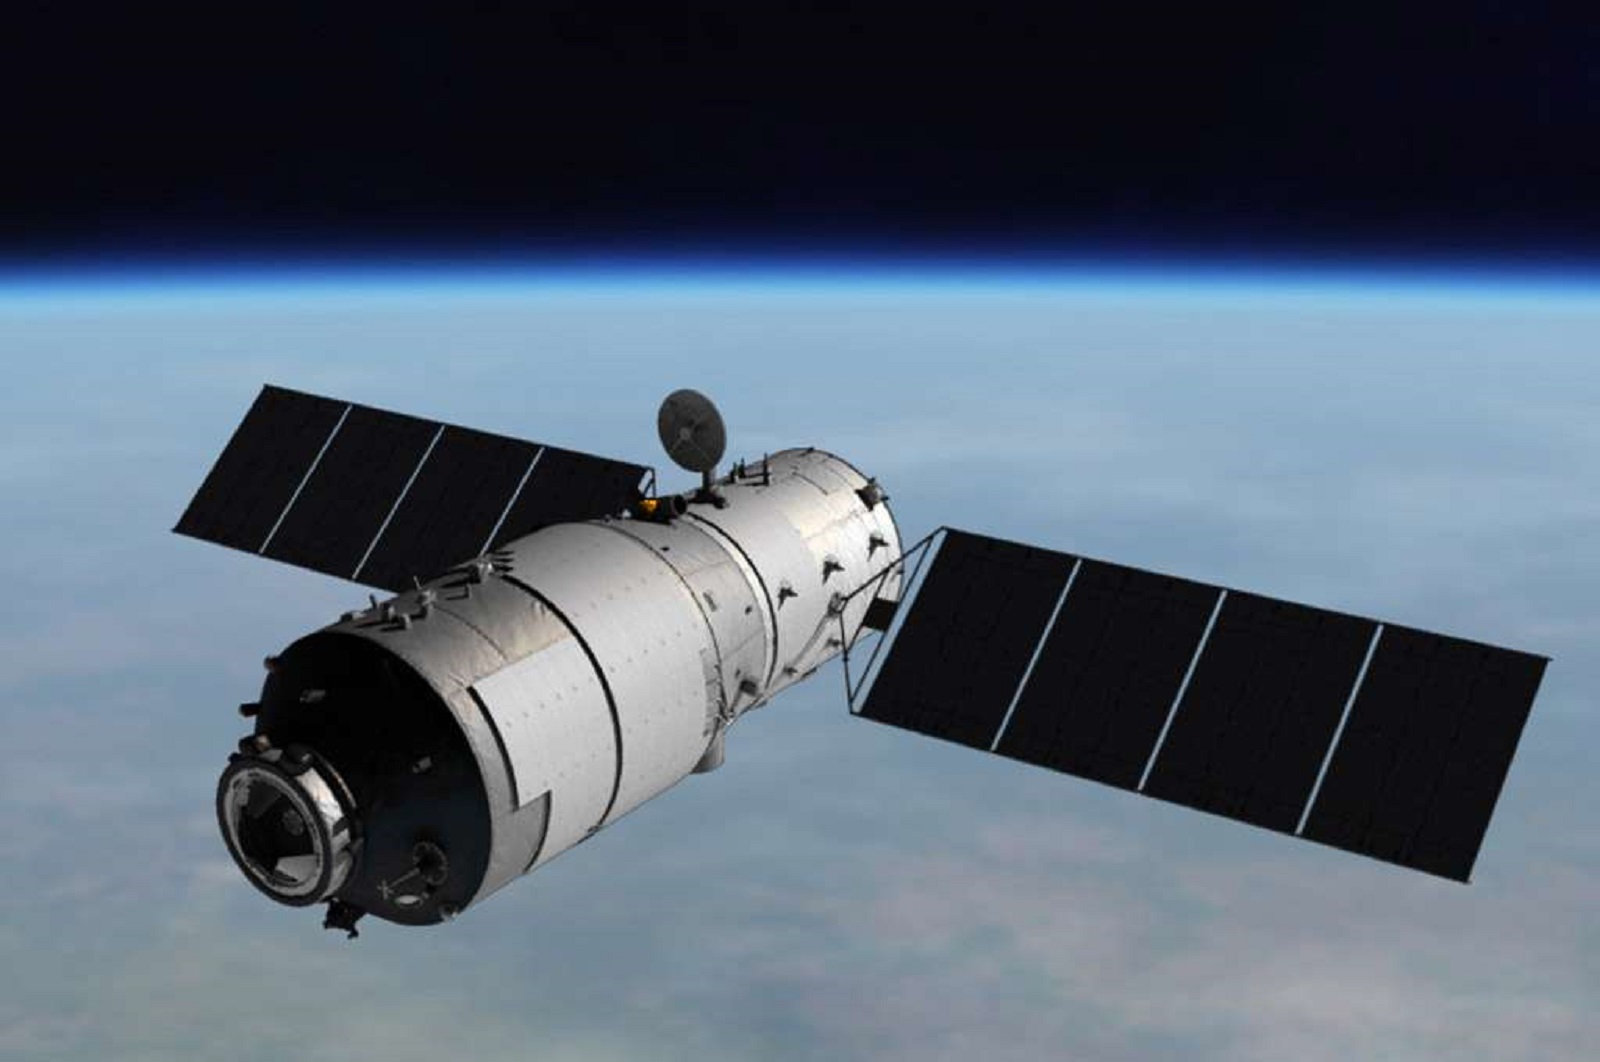 La station spatiale Tiangong-1 est la première station placée en orbite par la Chine. Sa mission consiste à préparer la voie pour de futures stations habitées, Tiangong-2 puis Tiangong-3. © CNSA